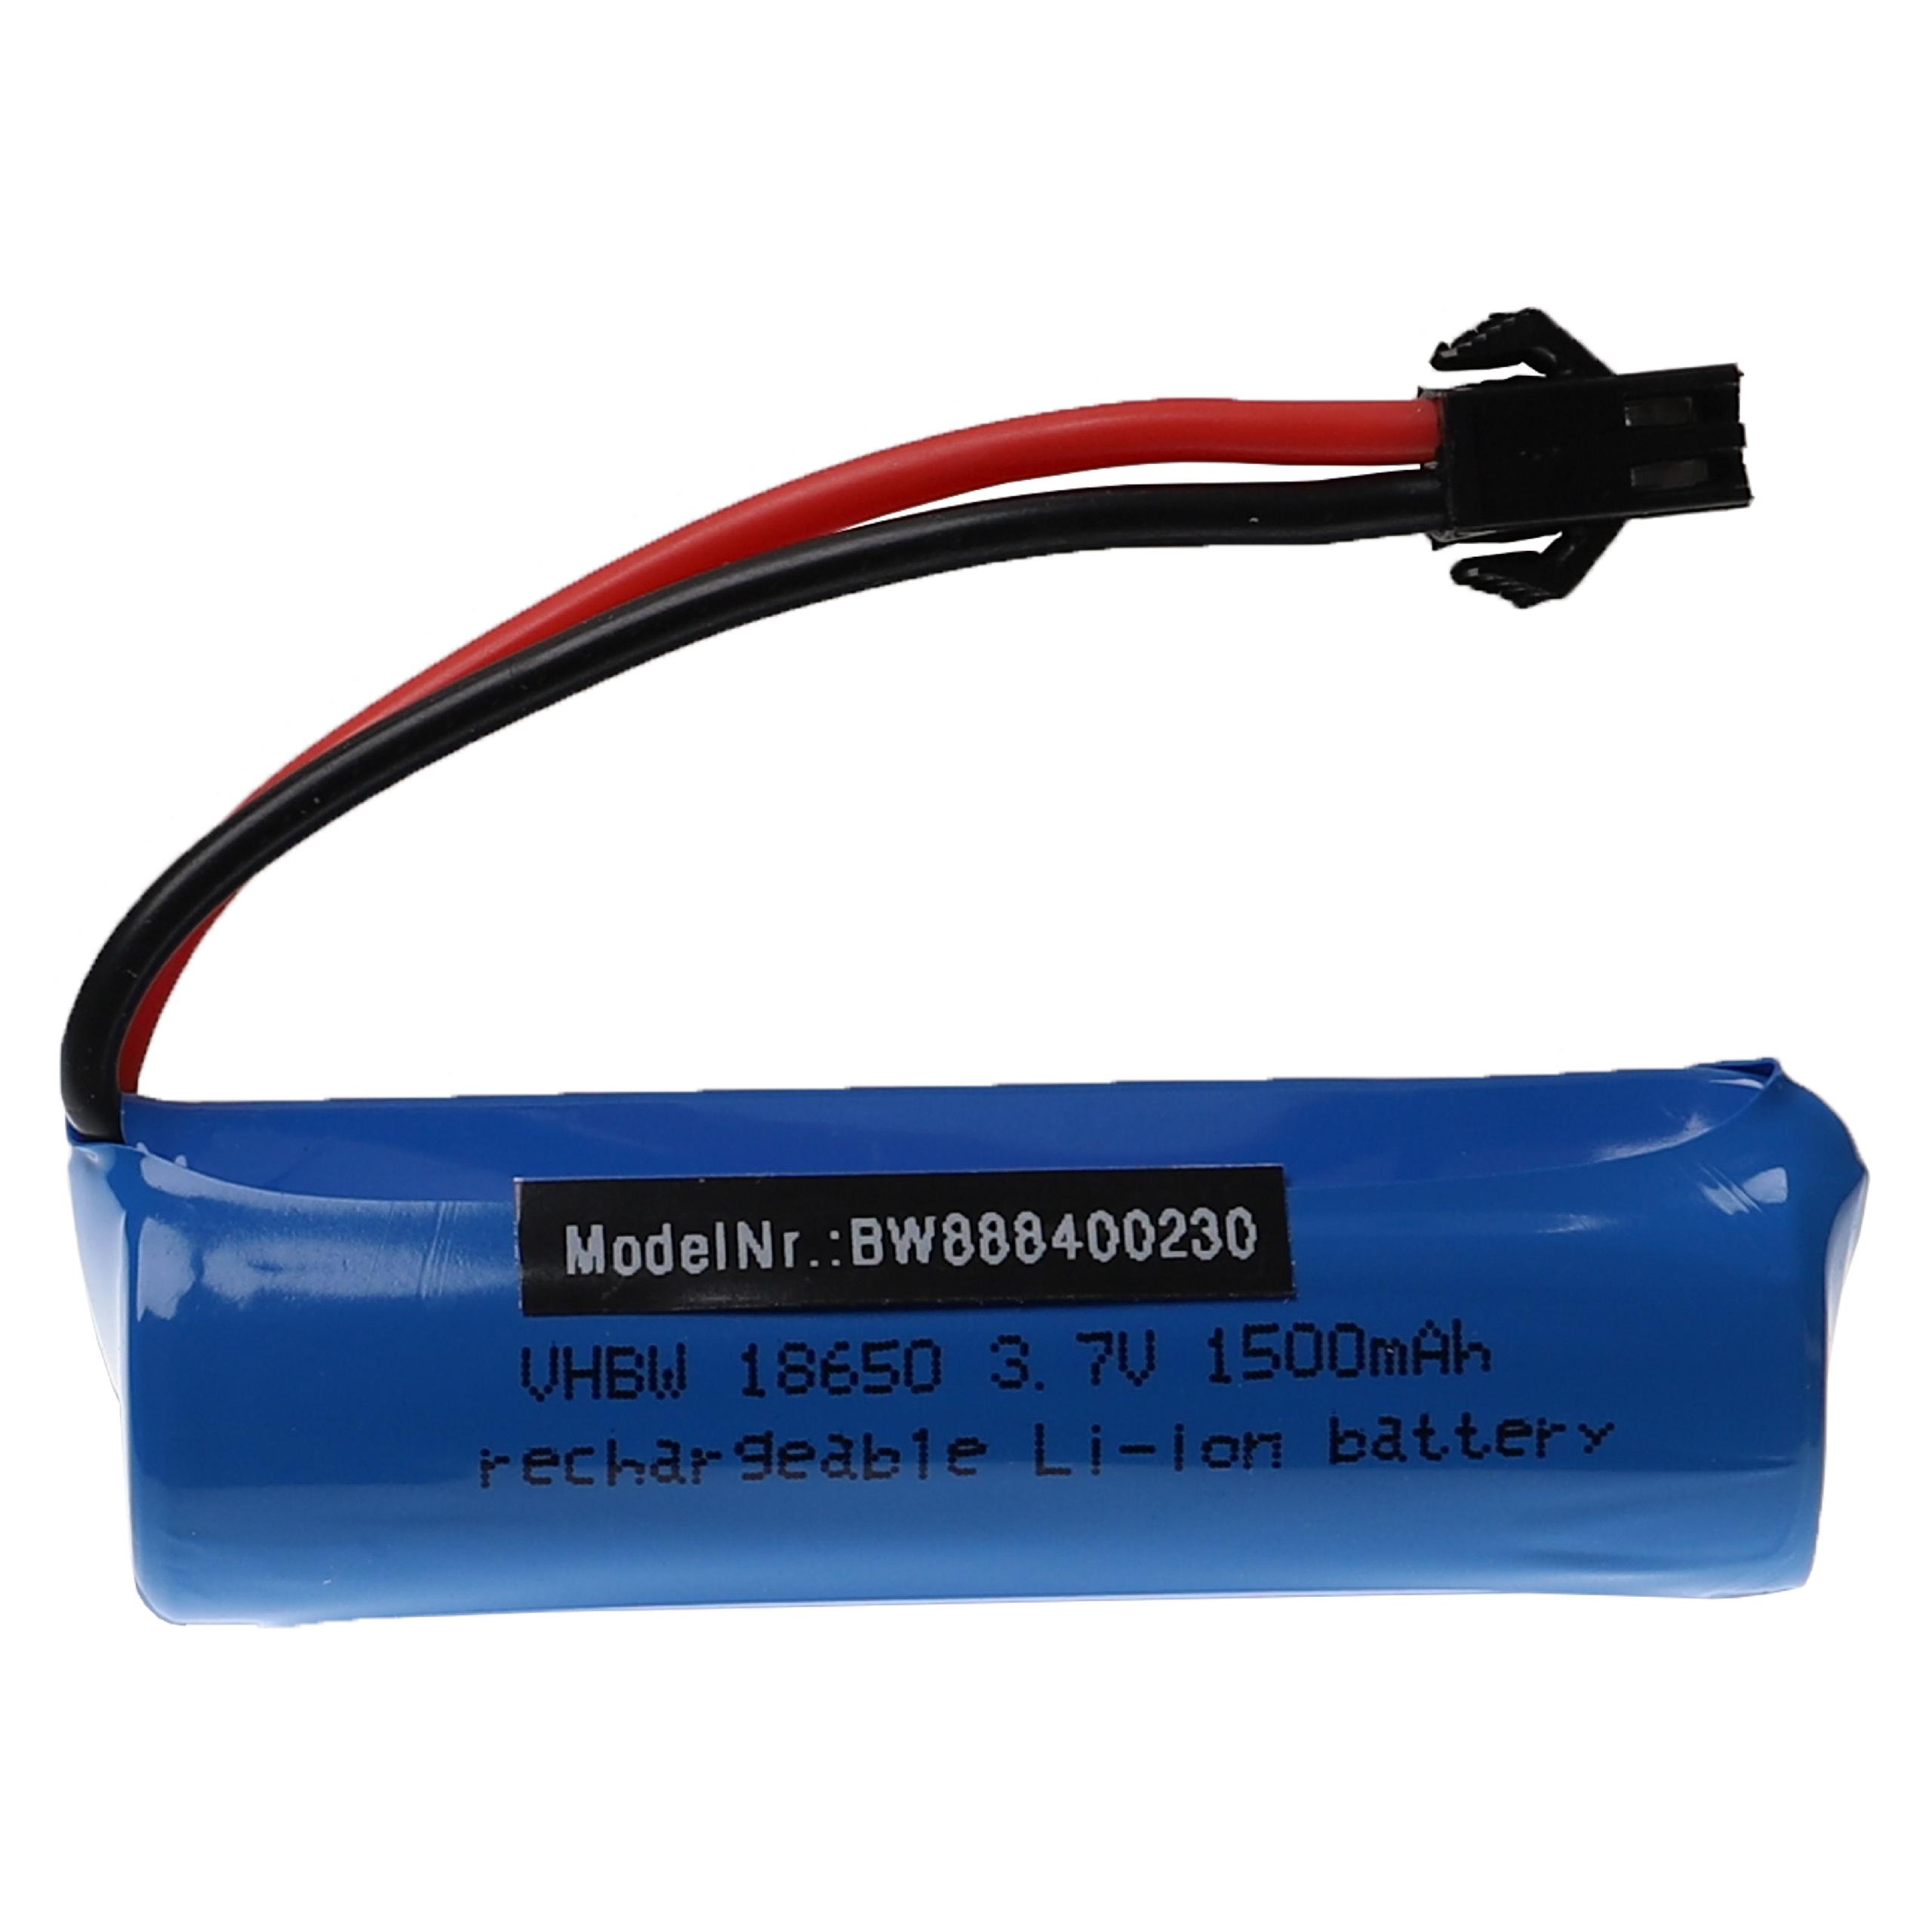 Vhbw Batterie compatible avec SM-3P connecteur pour modéle RC par